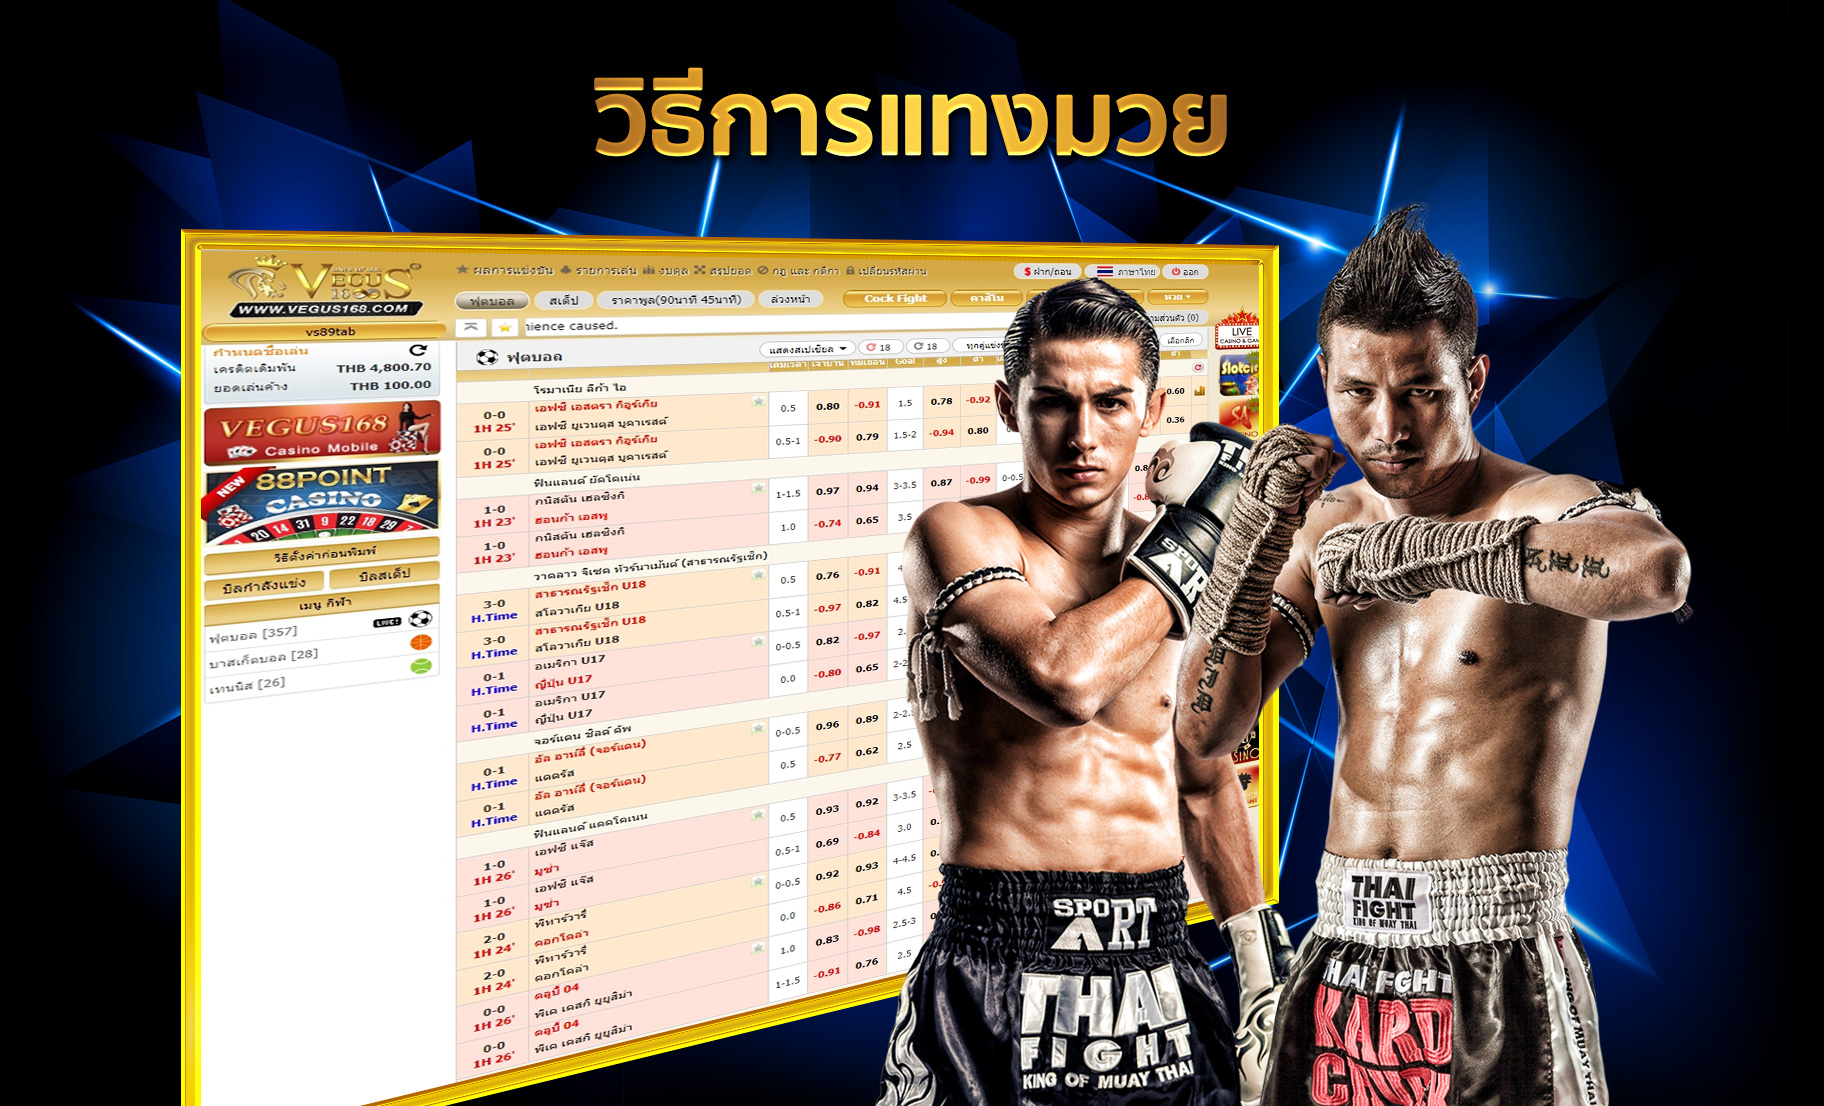  วิธีการแทงมวยไทย Variety88 วาไรตี้88 เว็บพนันออนไลน์ครบวงจร คาสิโนออนไลน์ บาคาร่าออนไลน์ สล็อตออนไลน์ แทงบอลออนไลน์ แทงหวยออนไลน์ 